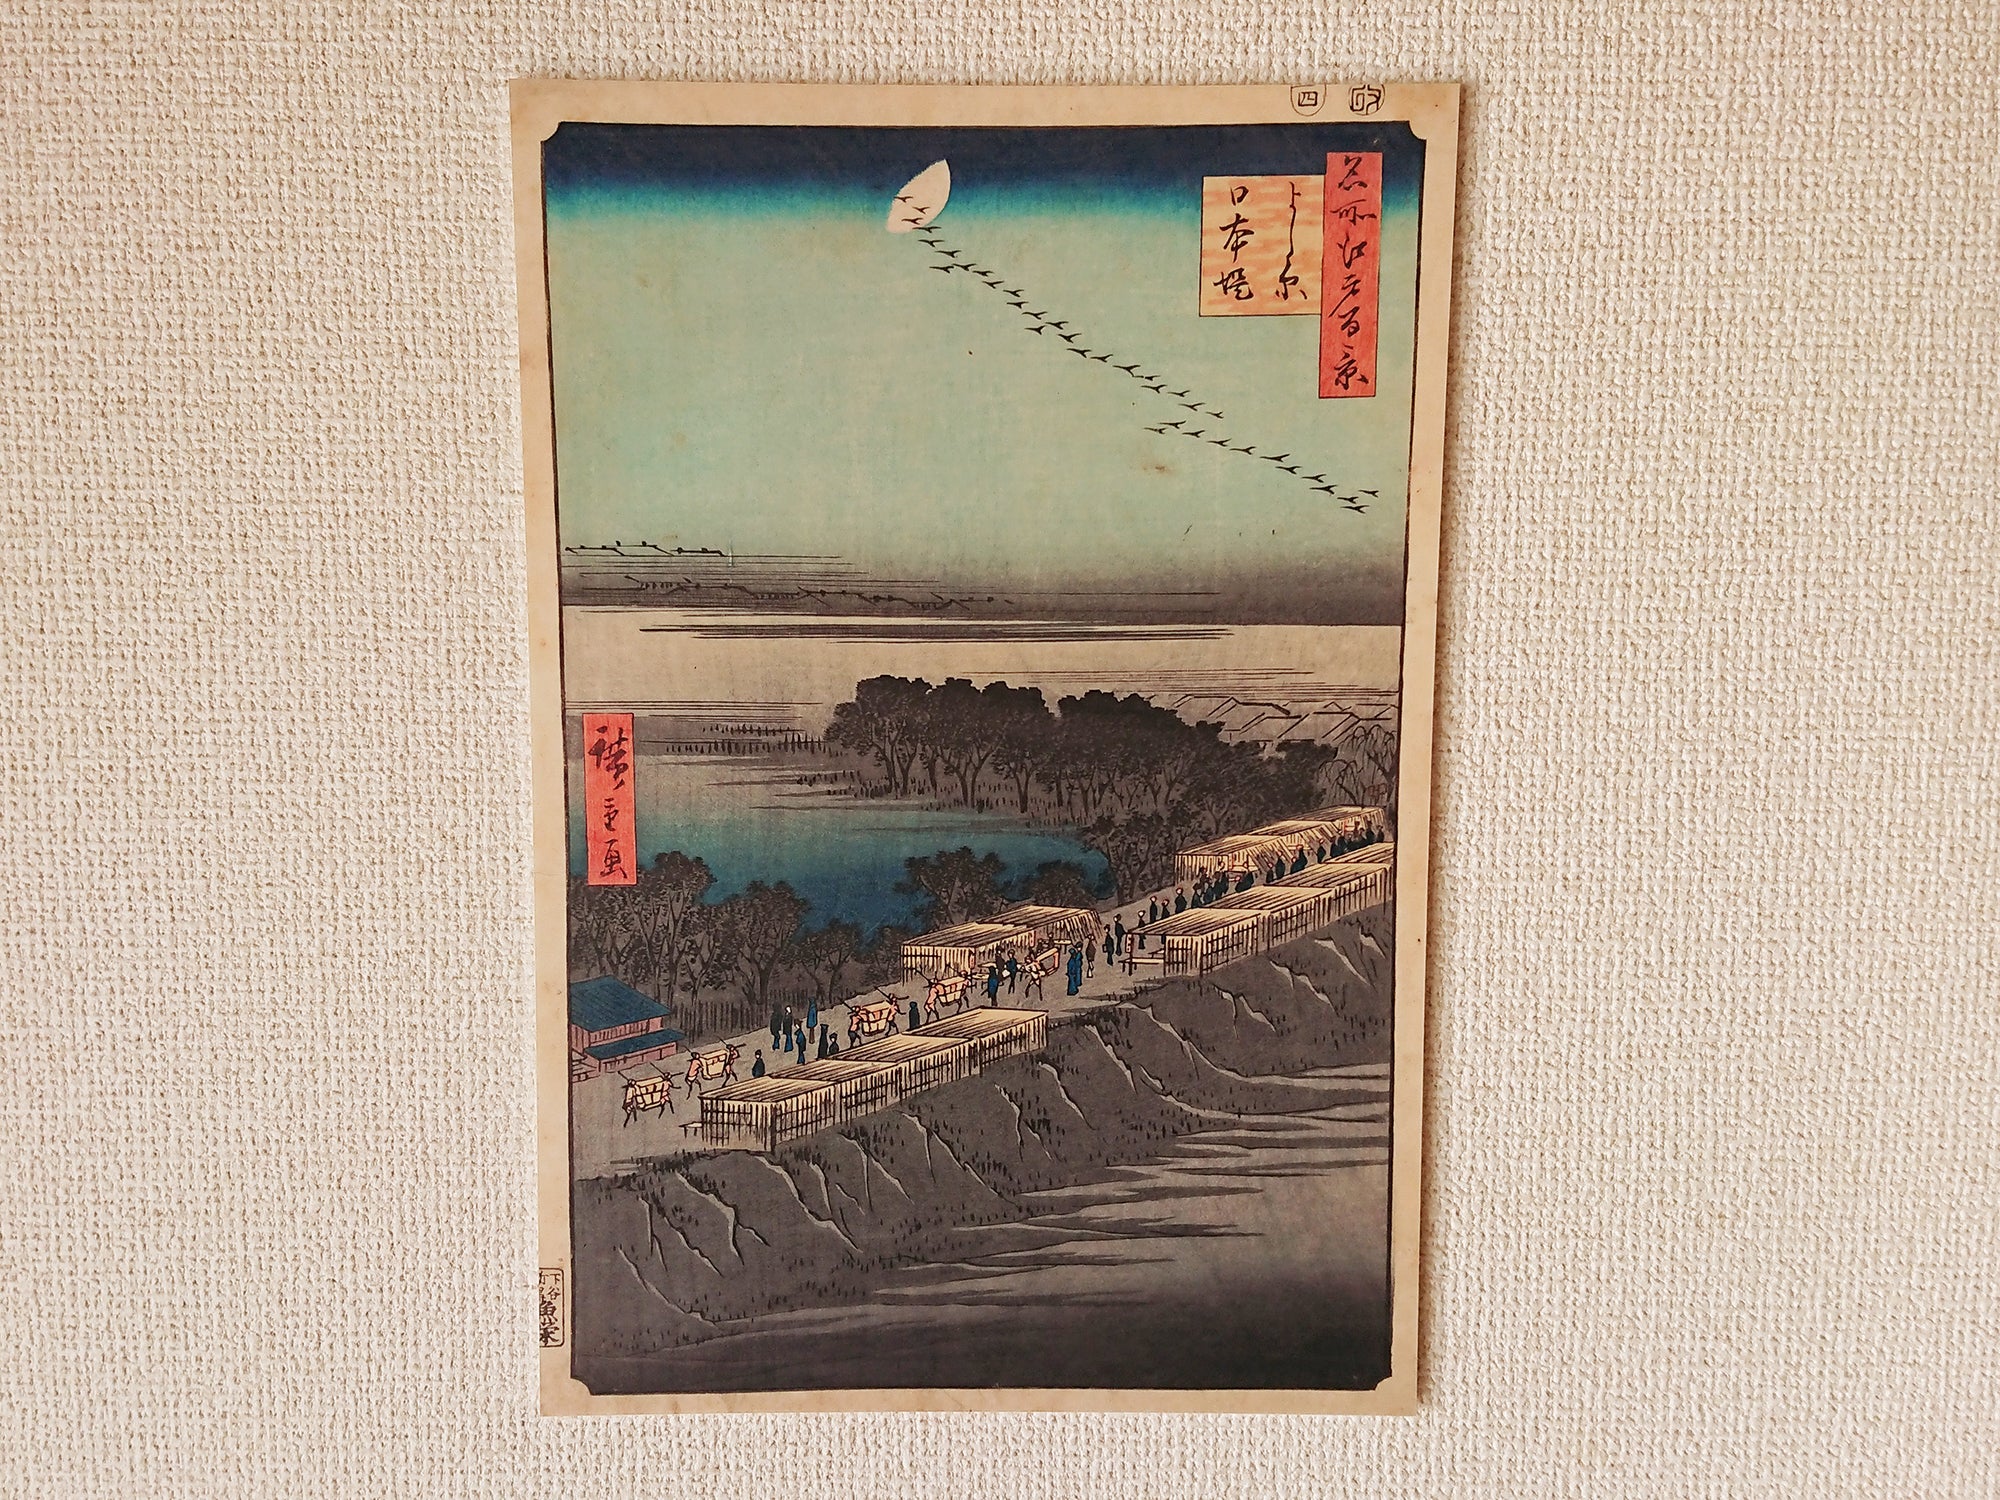 Wall panel of Ukiyo-e "Yoshiwara Embankment" by famous Japanese painter "Hiroshige Utagawa"